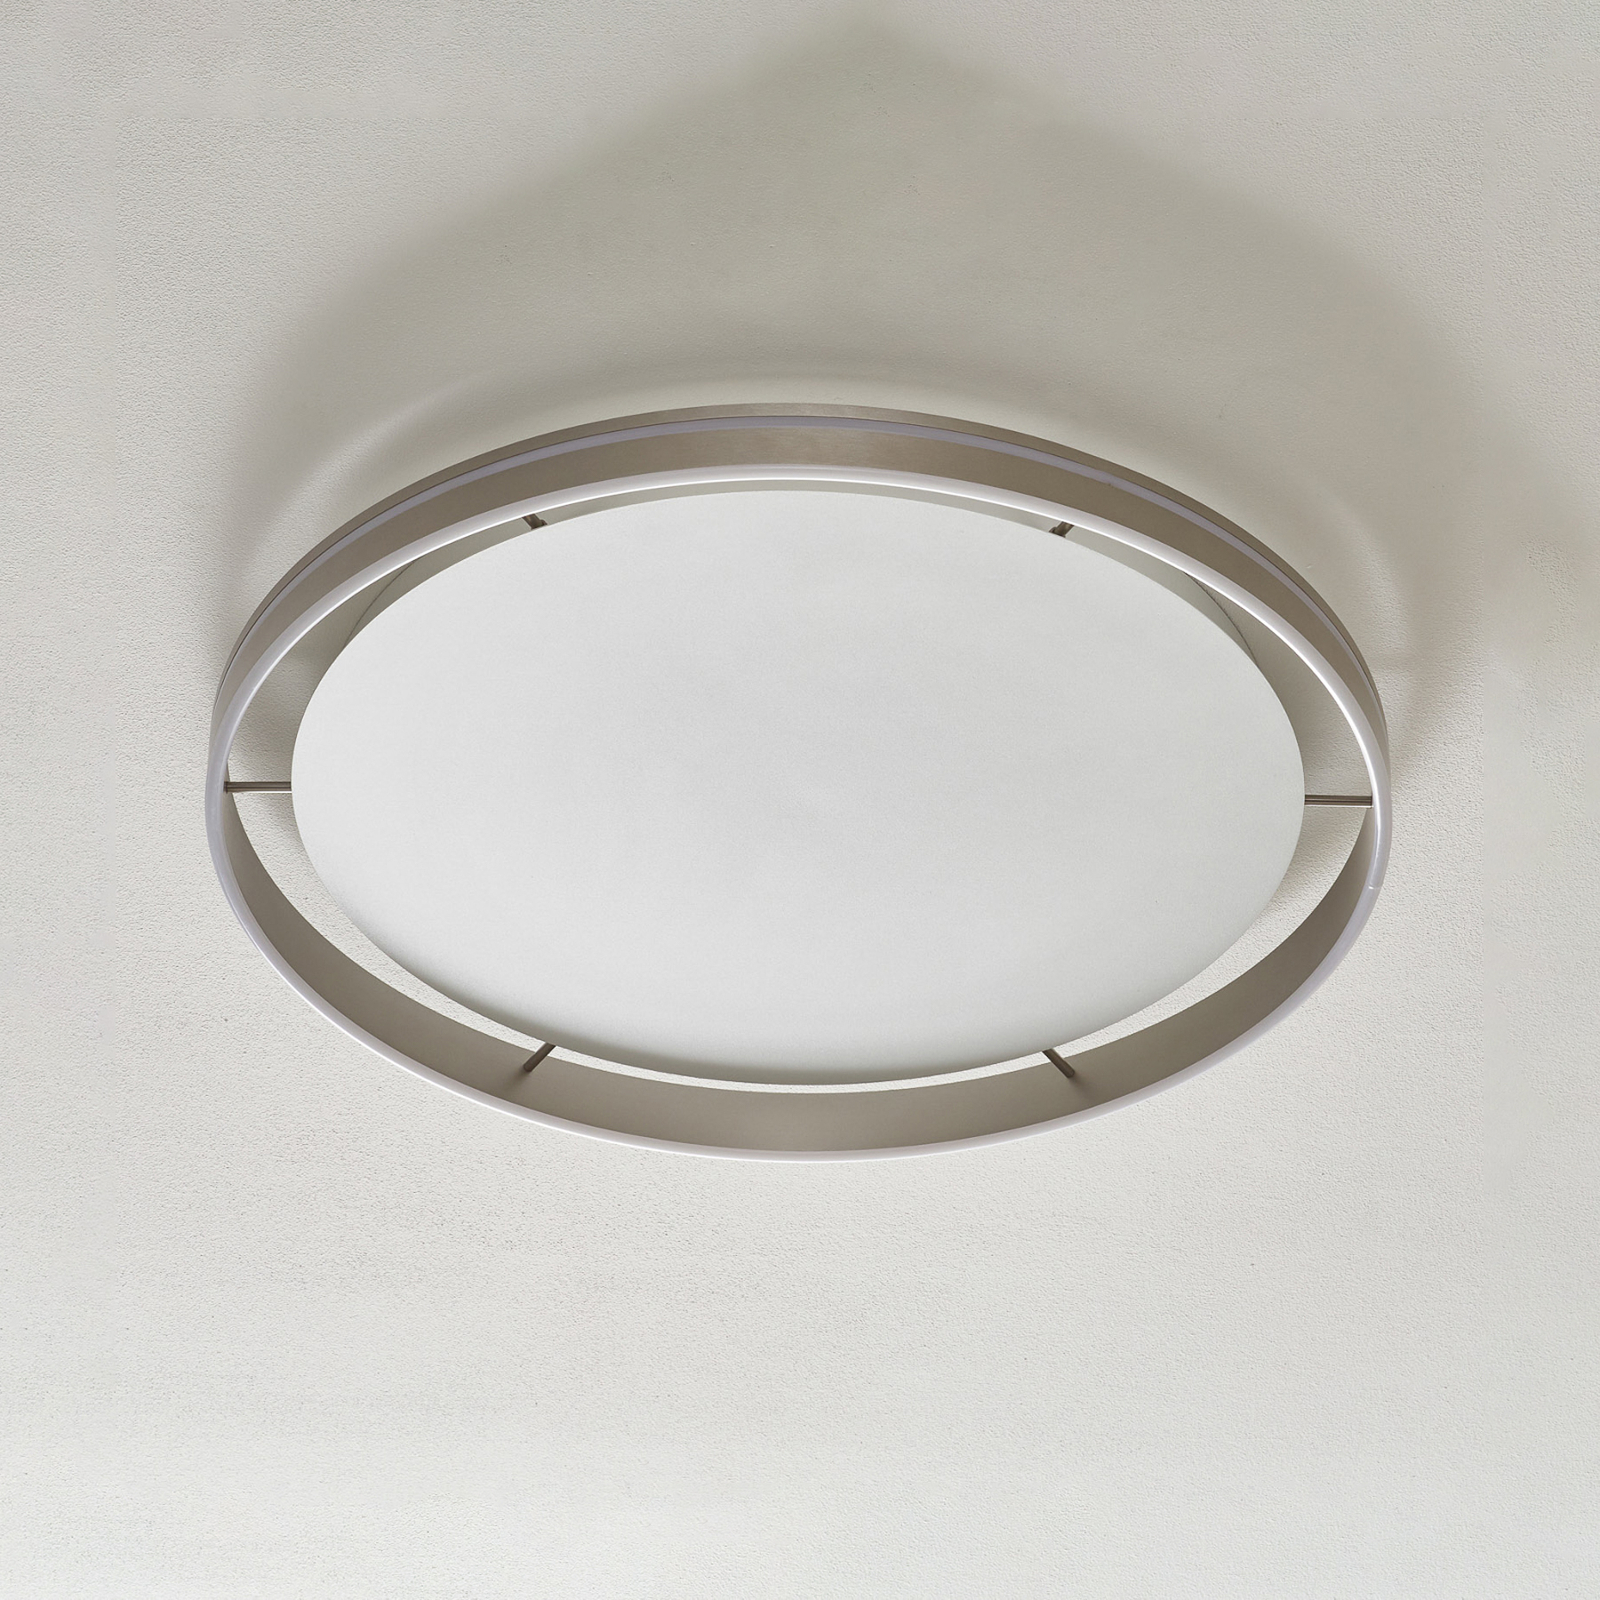 Paul Neuhaus Q-VITO LED ceiling lamp 79cm steel